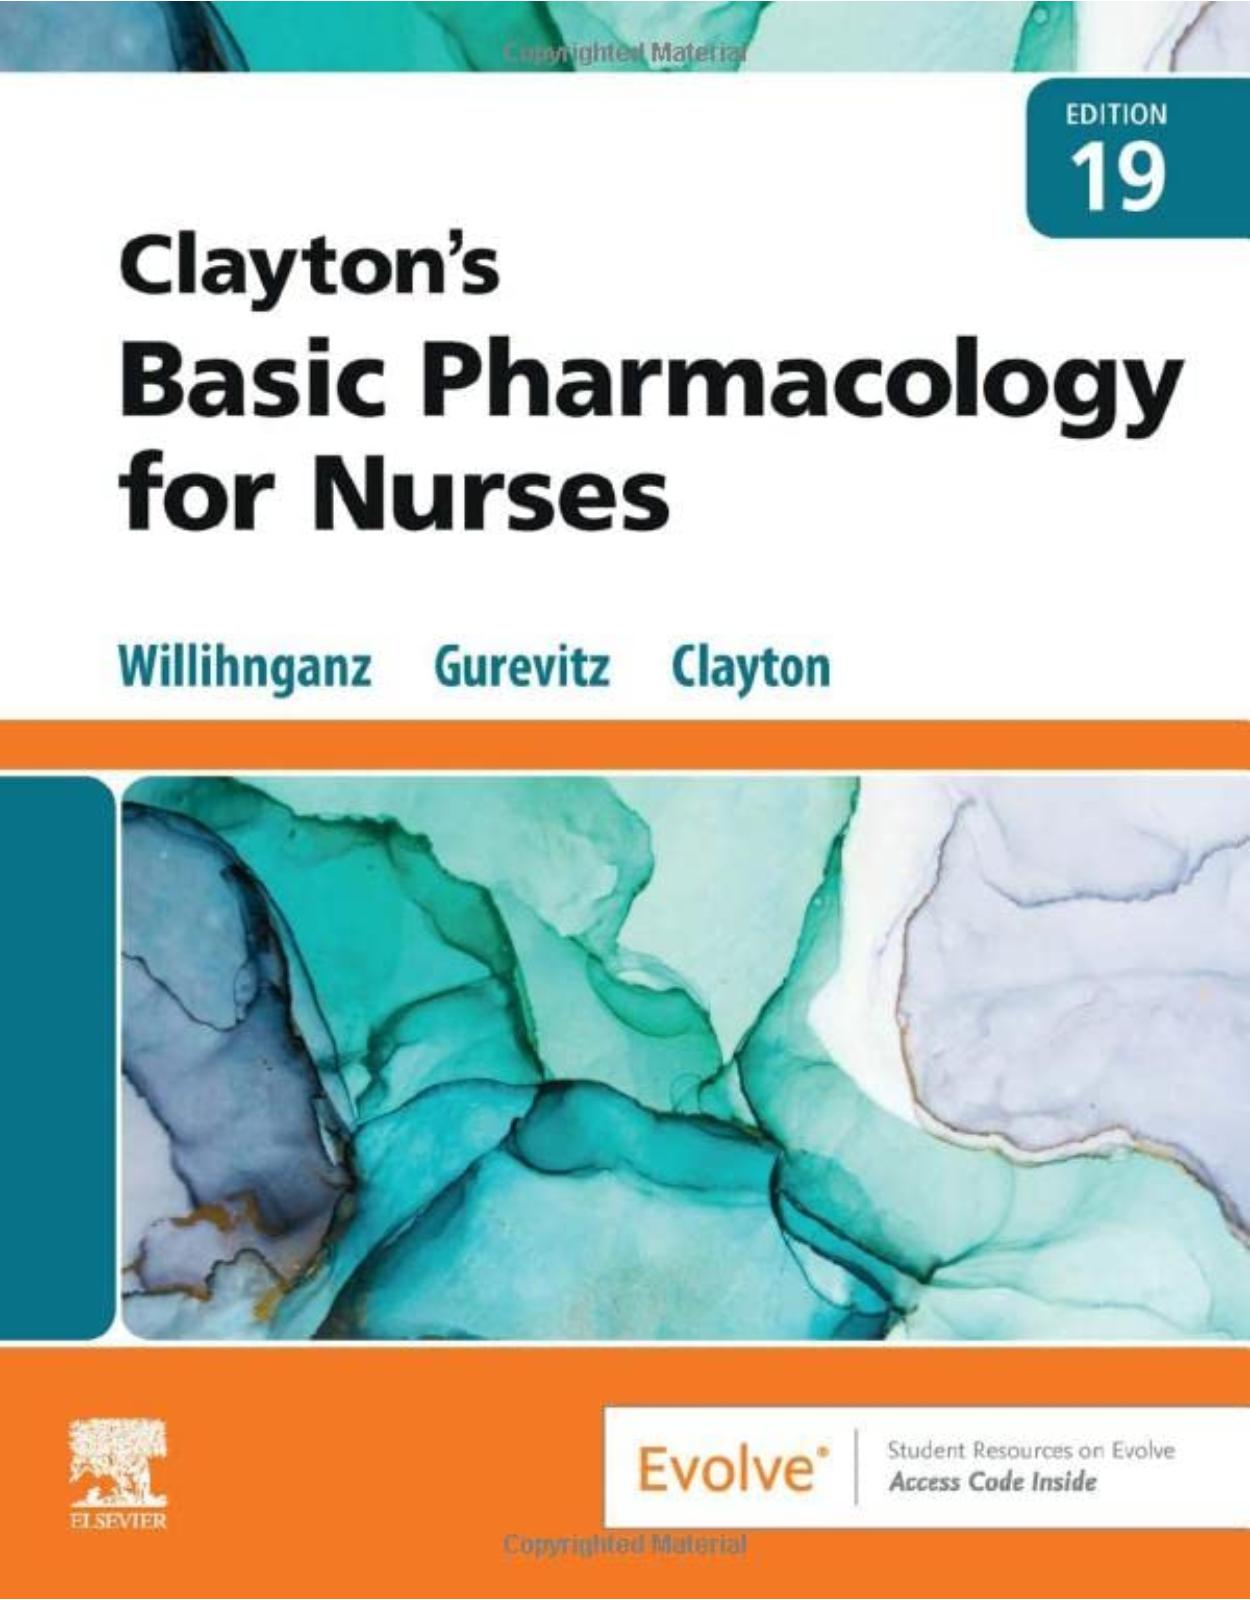 Clayton’s Basic Pharmacology for Nurses 19 edition